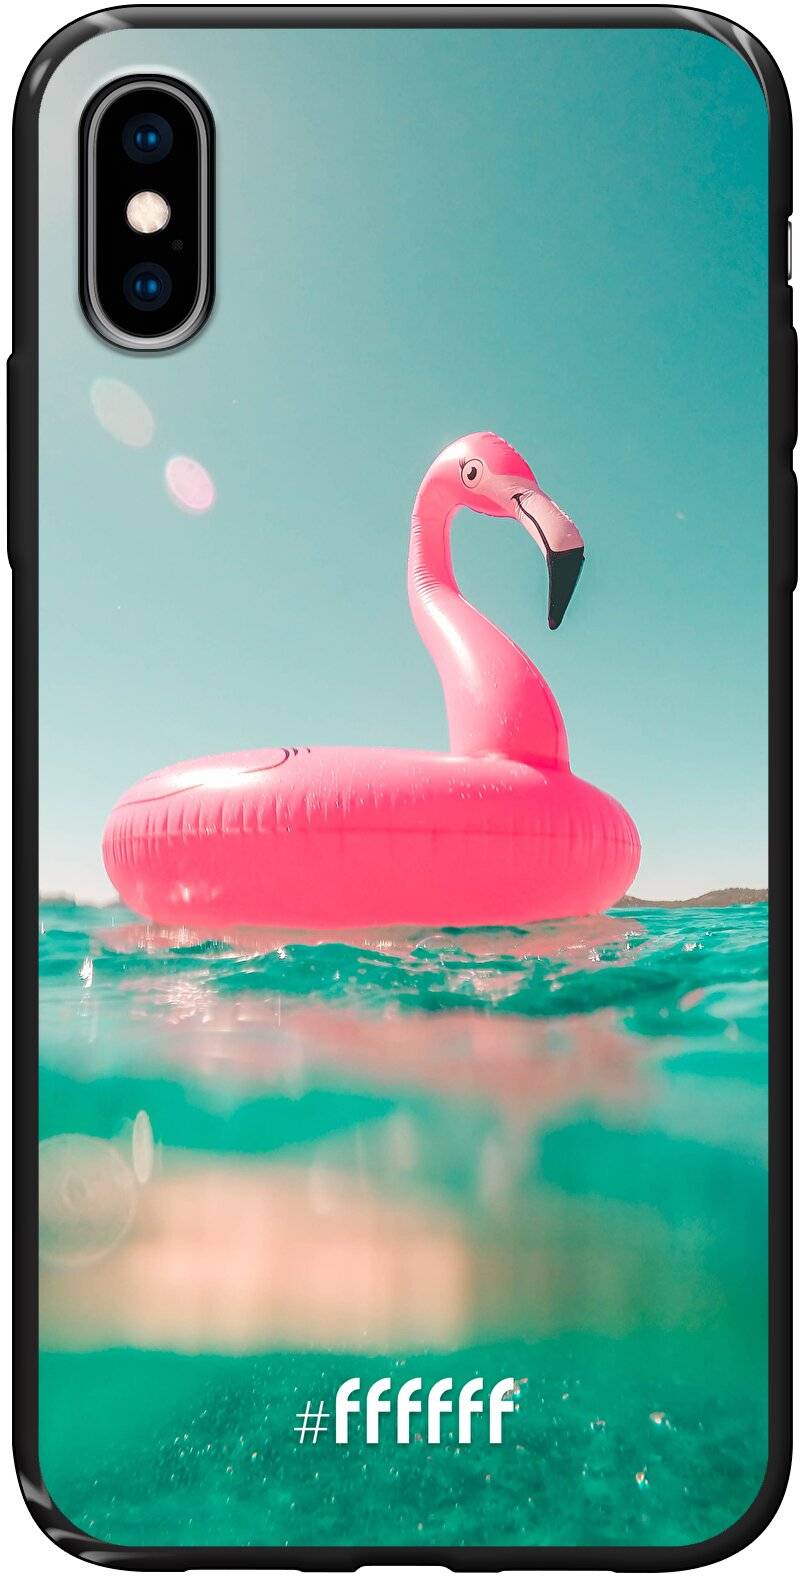 Flamingo Floaty iPhone X